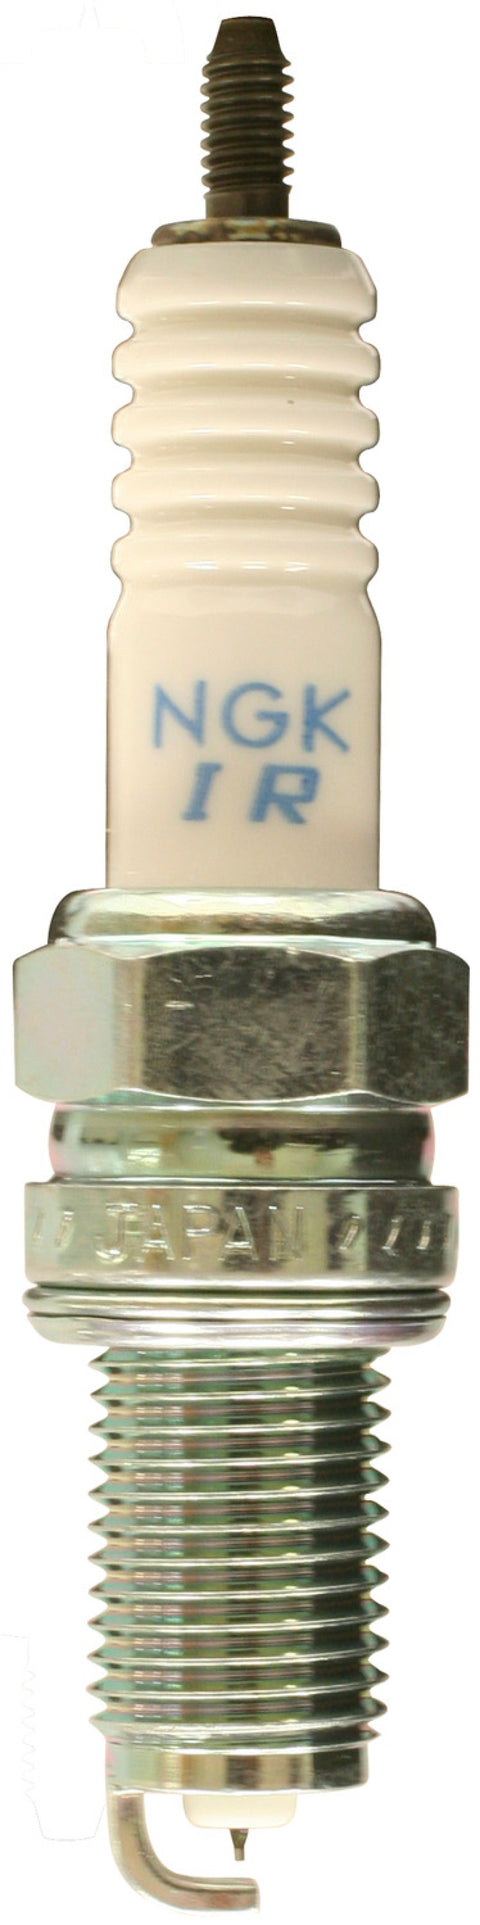 NGK Iridium Spark Plug Box of 4 (KR9CI)